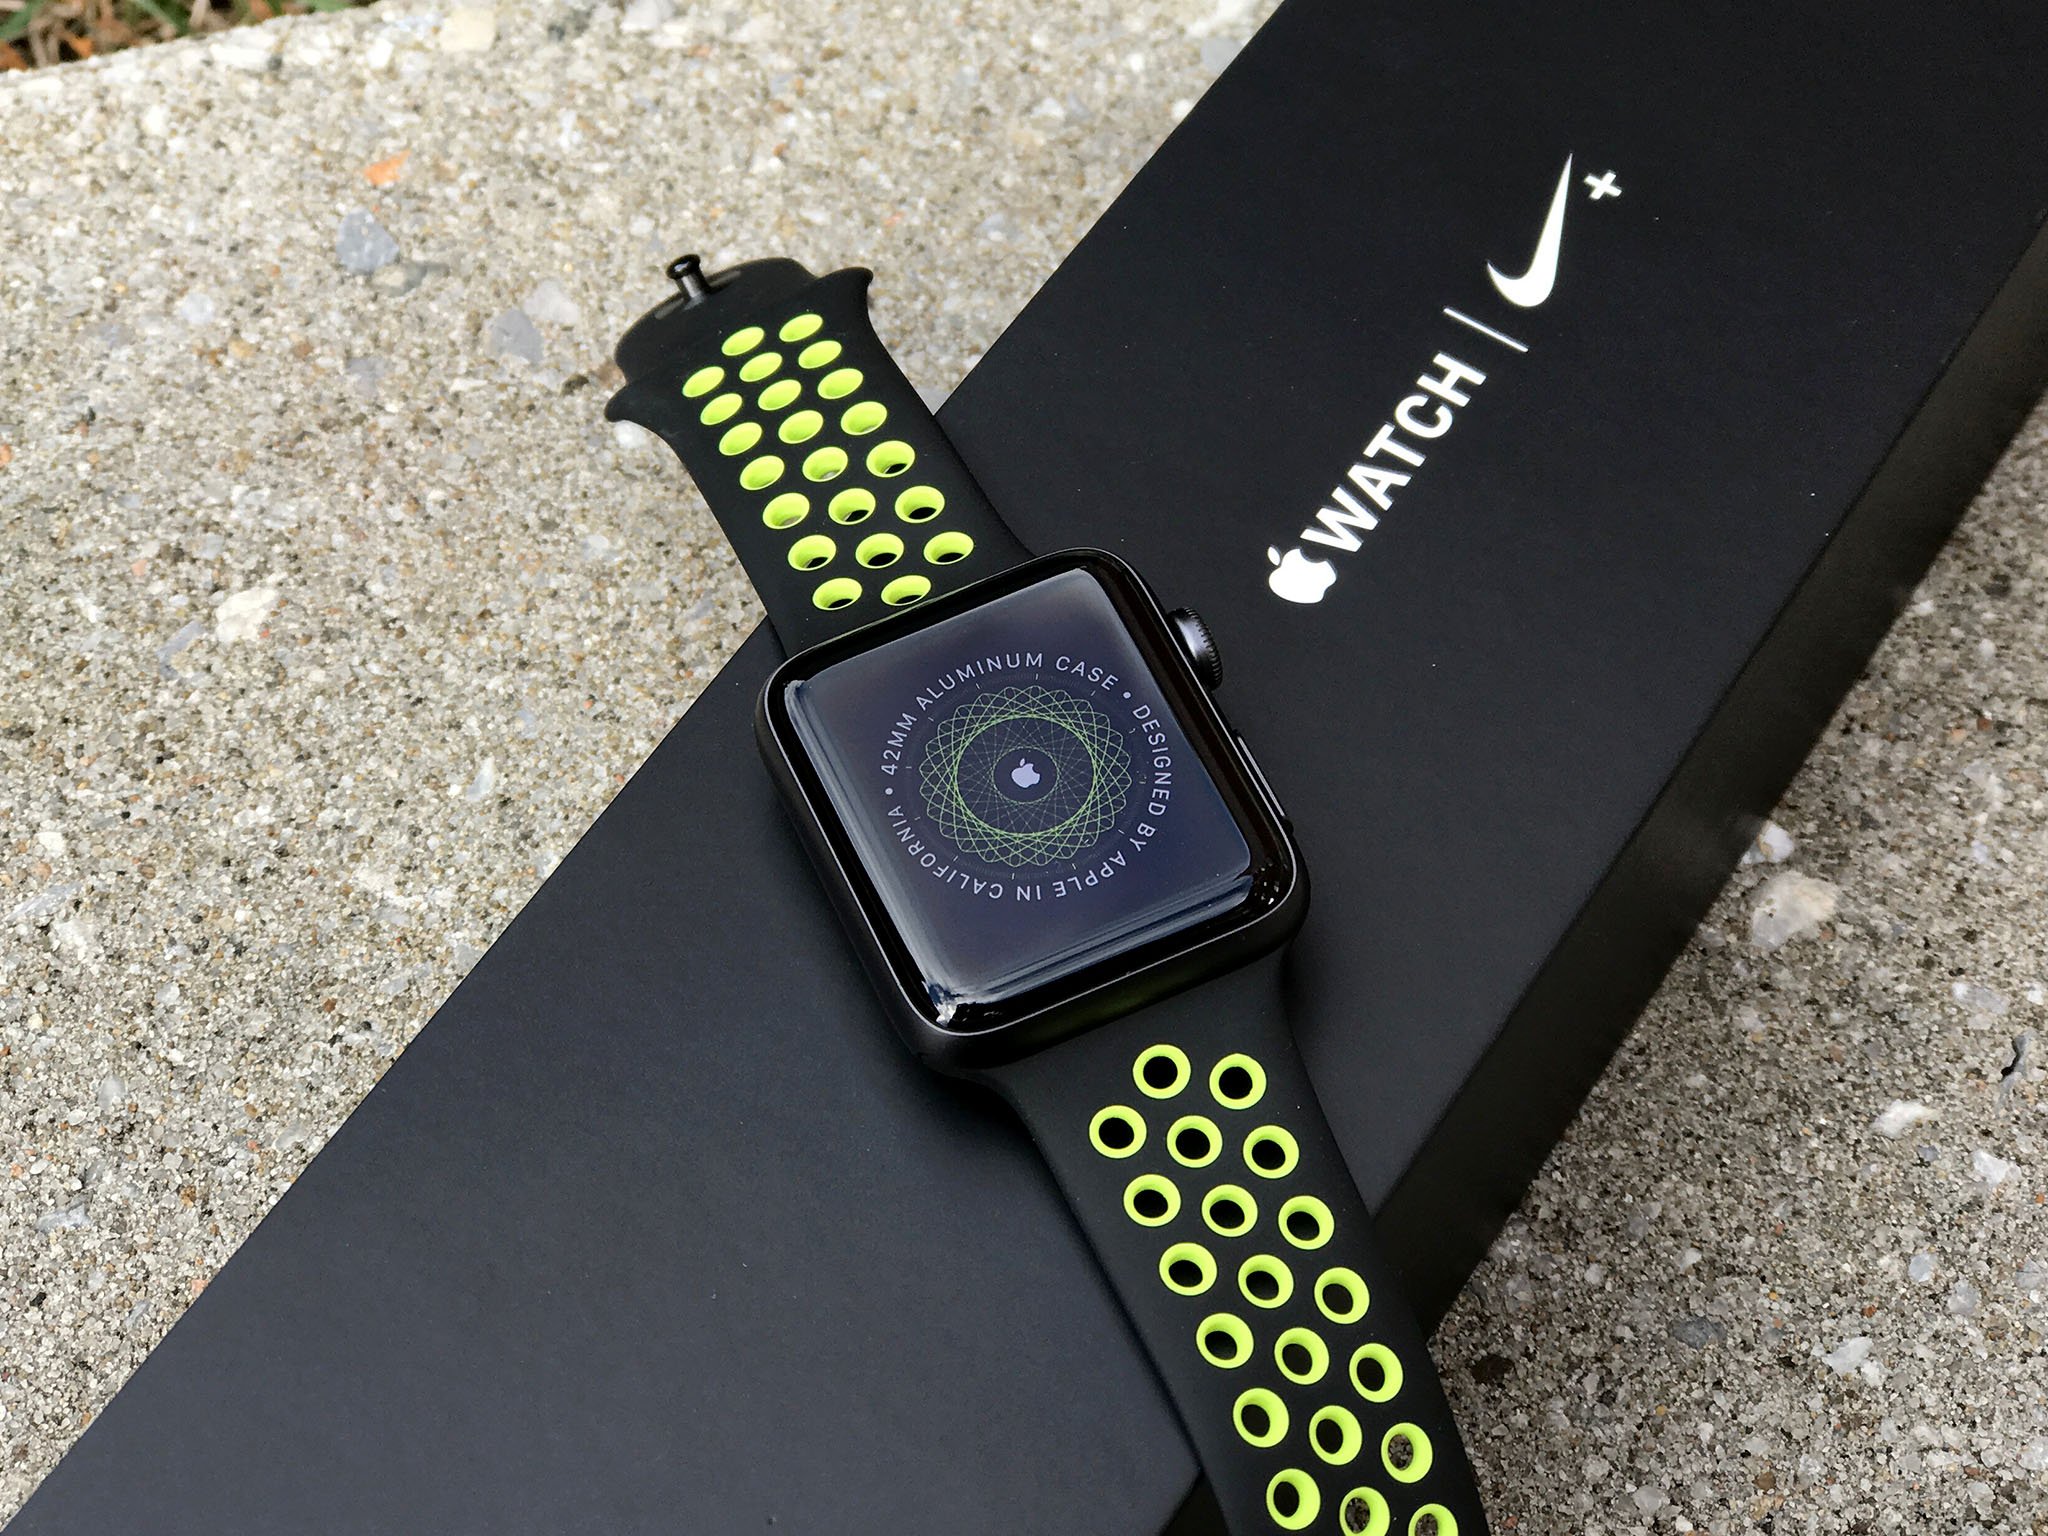 Apple Watch Nike